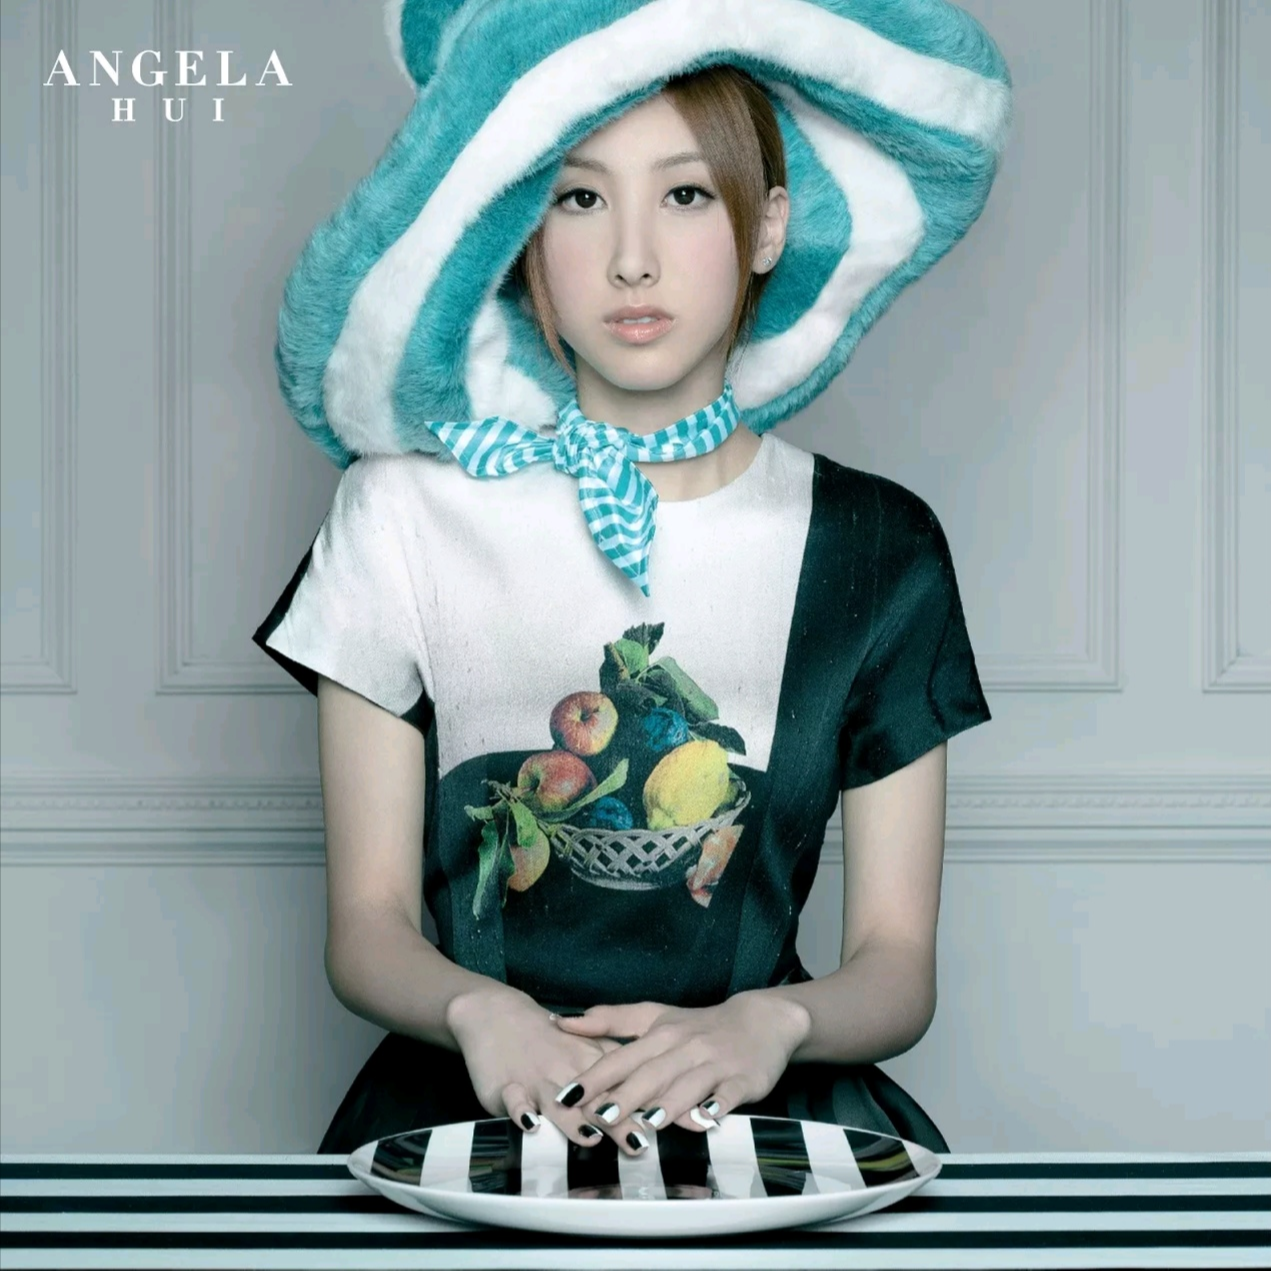 夜长话多歌词 歌手许靖韵-专辑Angela-单曲《夜长话多》LRC歌词下载